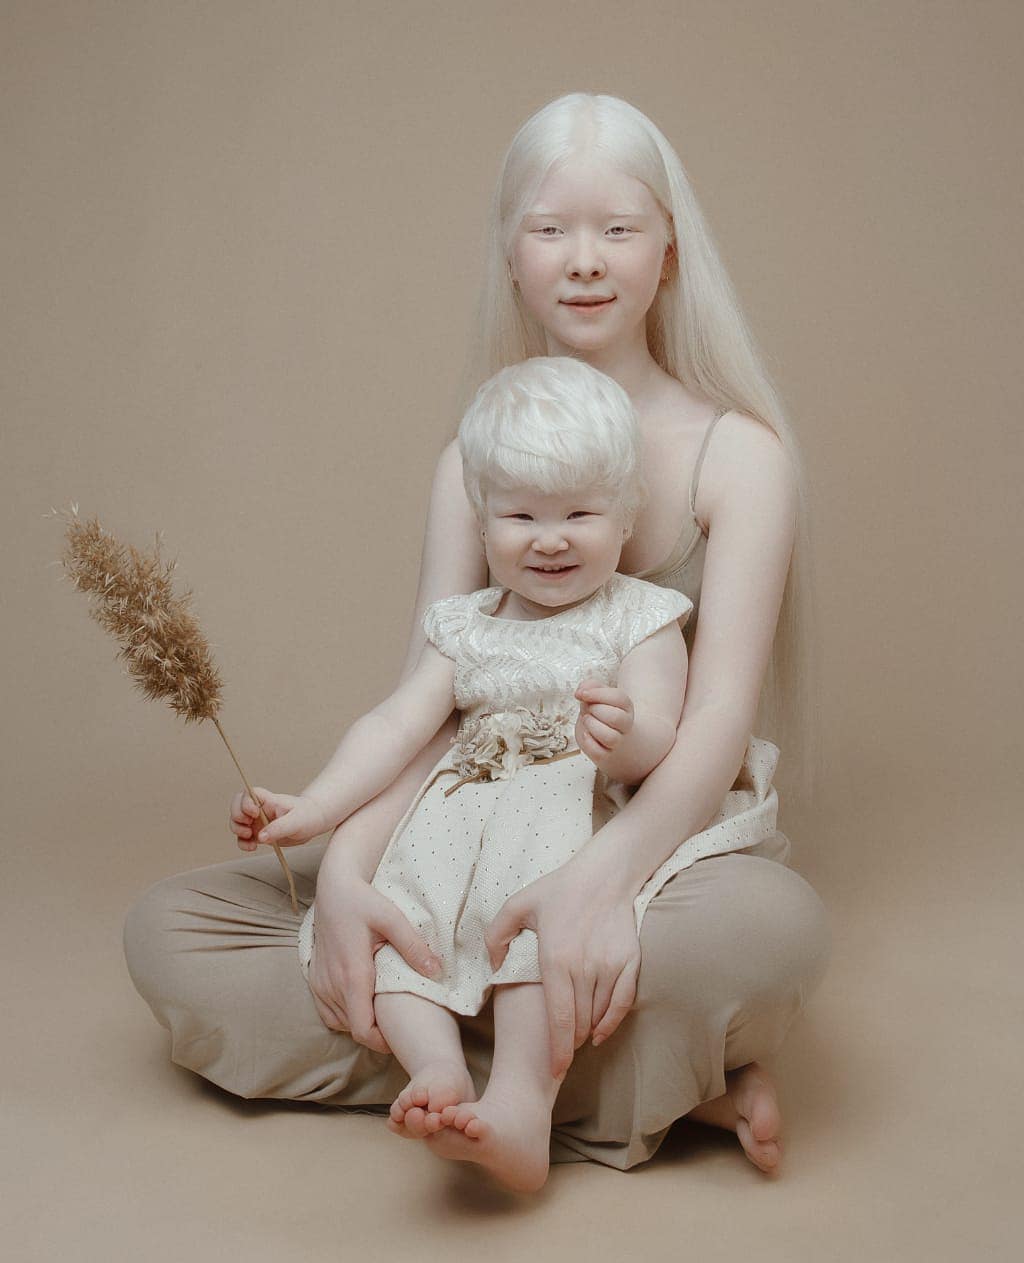 Сёстры-альбиносы родились с разницей в 12 лет и покорили мир моды своей уникальностью необычной внешностью. ФОТО